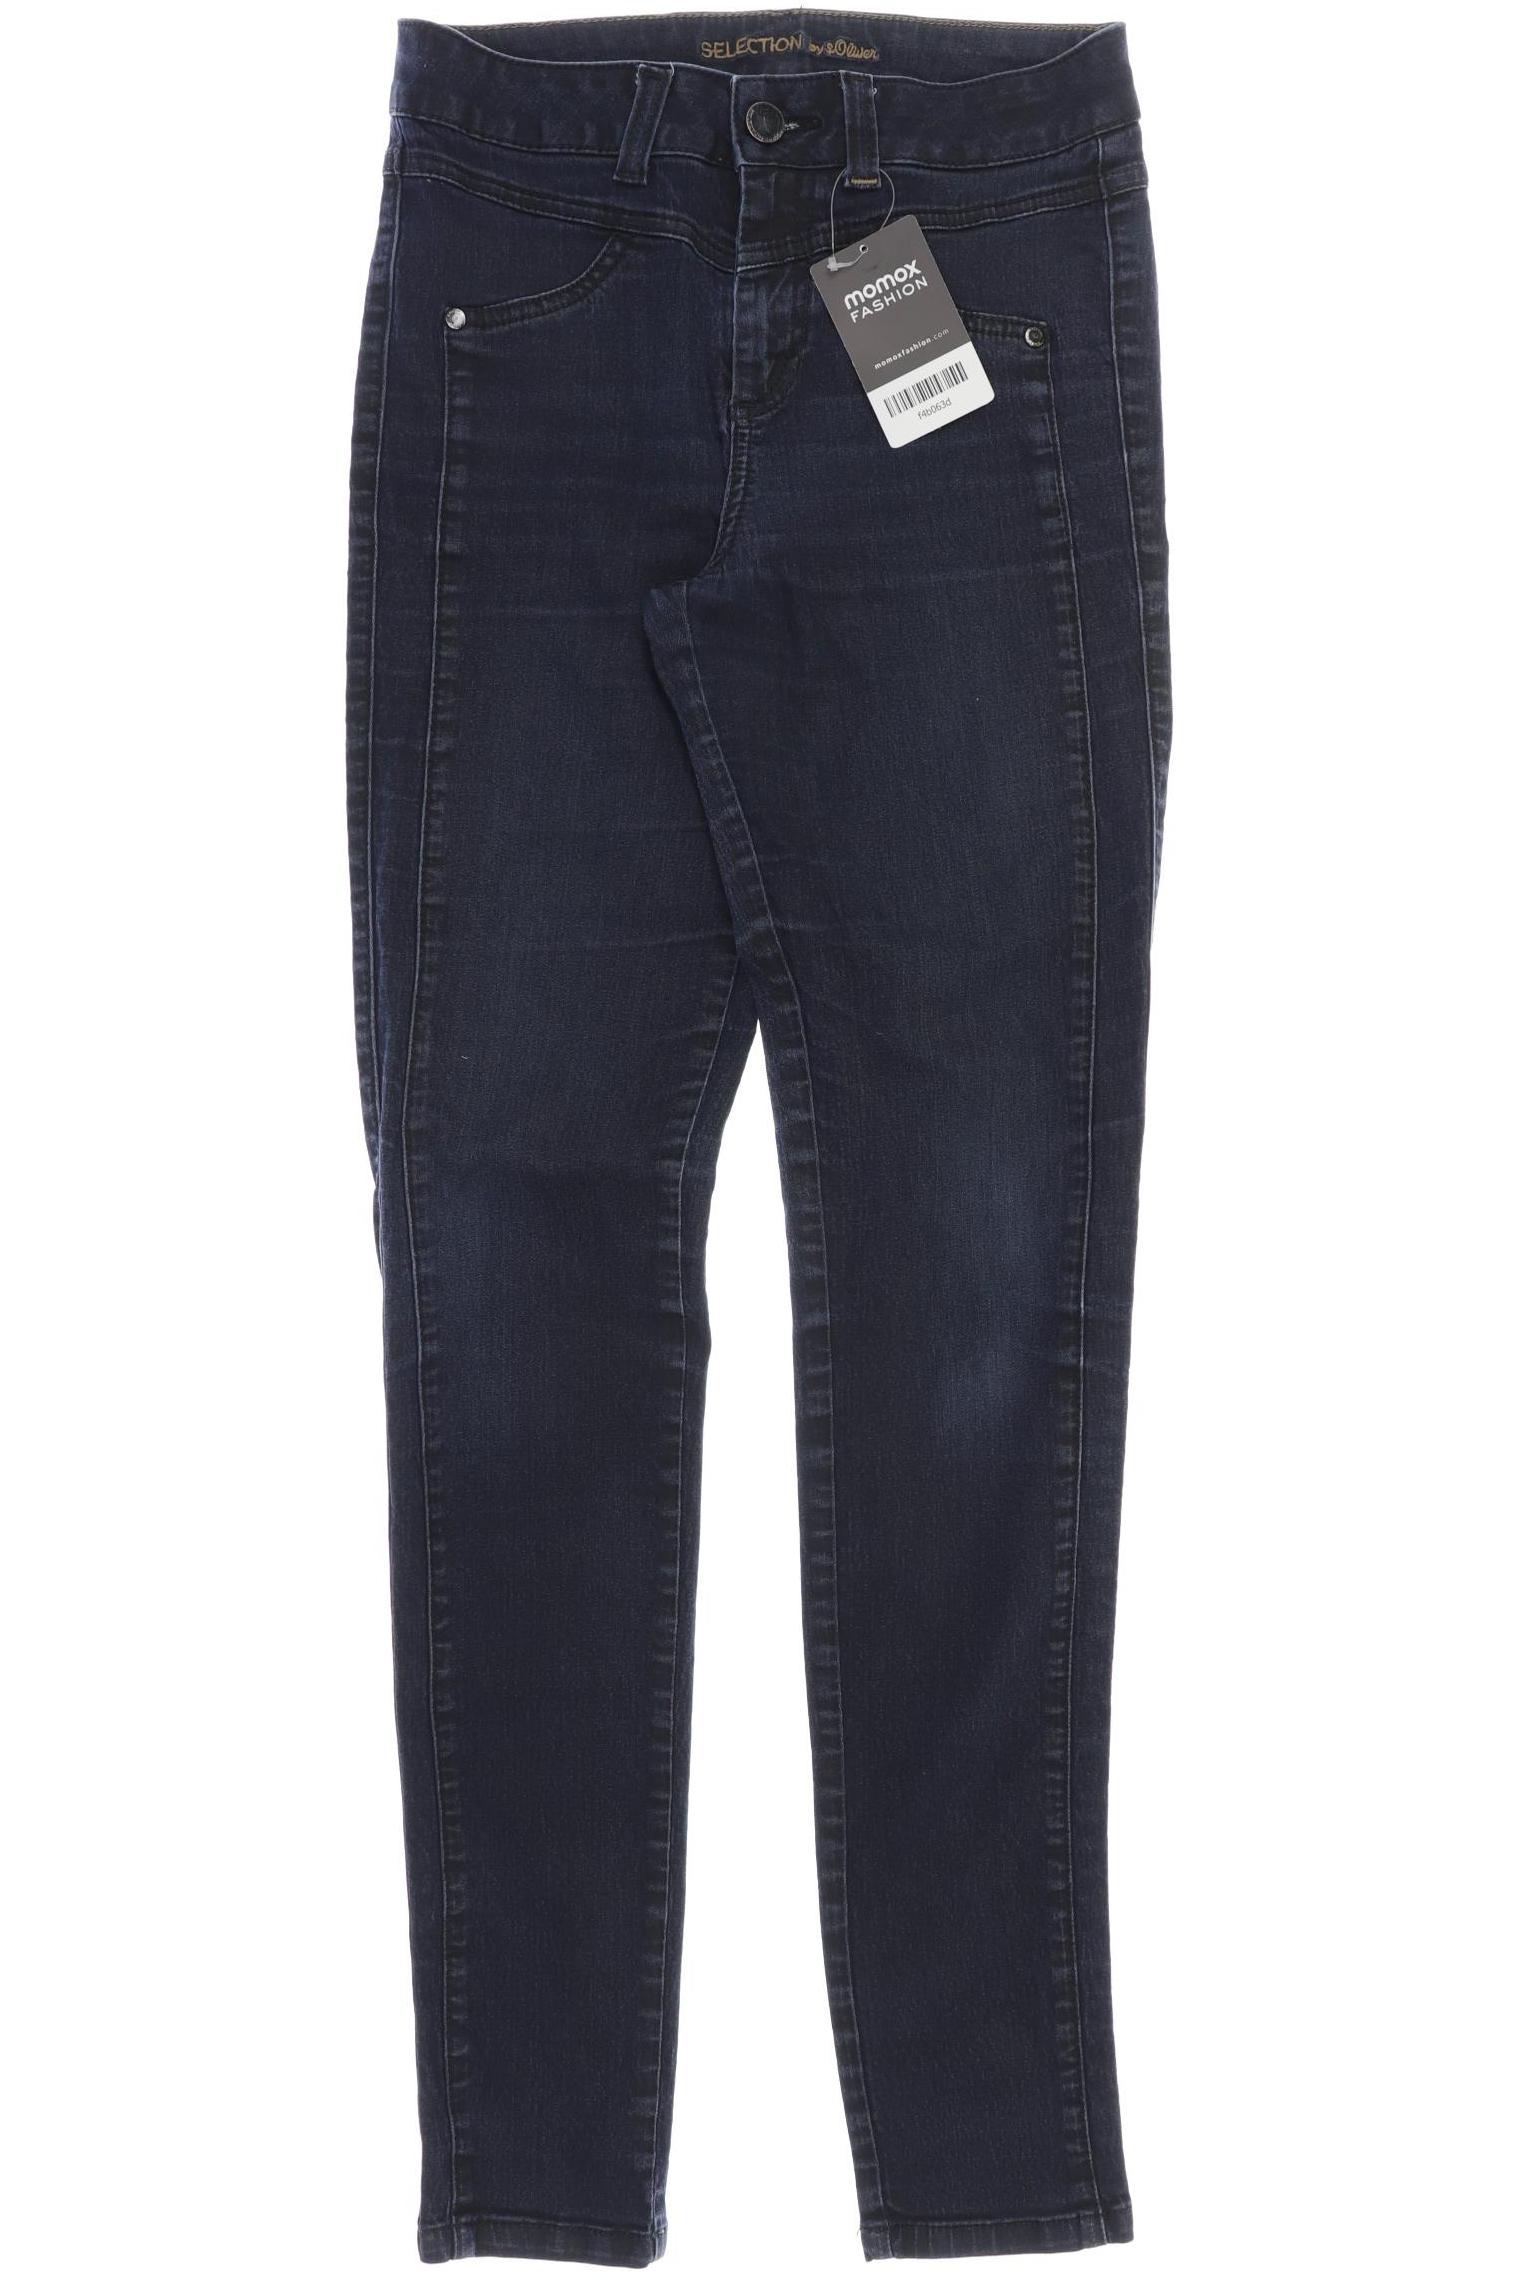 s.Oliver Selection Damen Jeans, blau von s.Oliver Selection